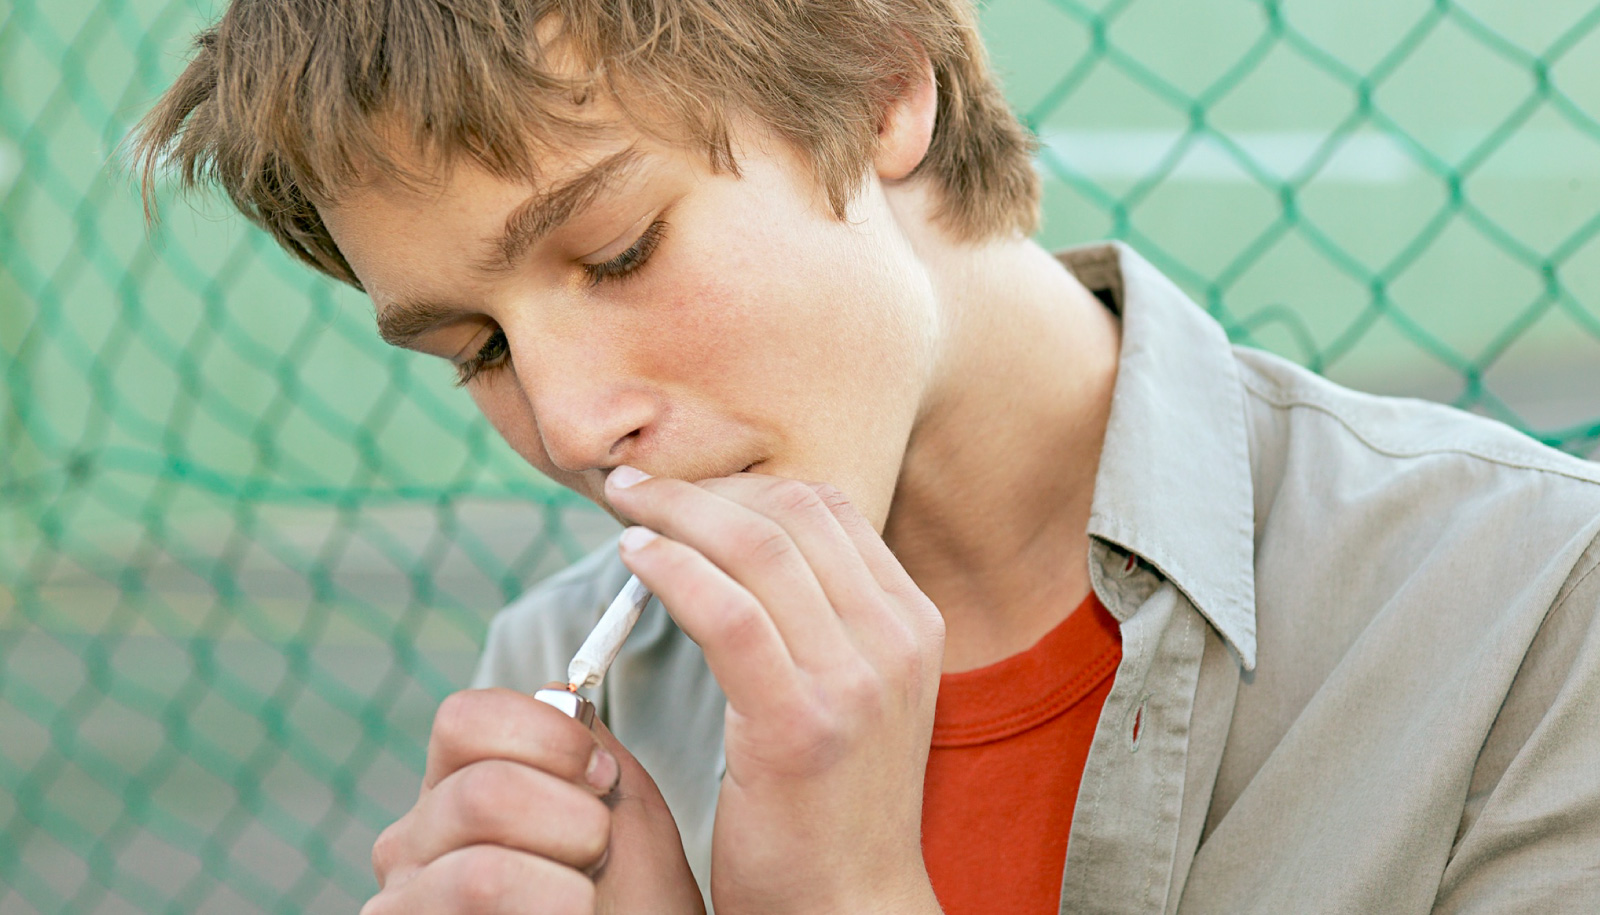 Юнец с трудным характером 9 букв. Курящий подросток. Курение подростков. Подросток с сигаретой. Подростки и вредные привычки.